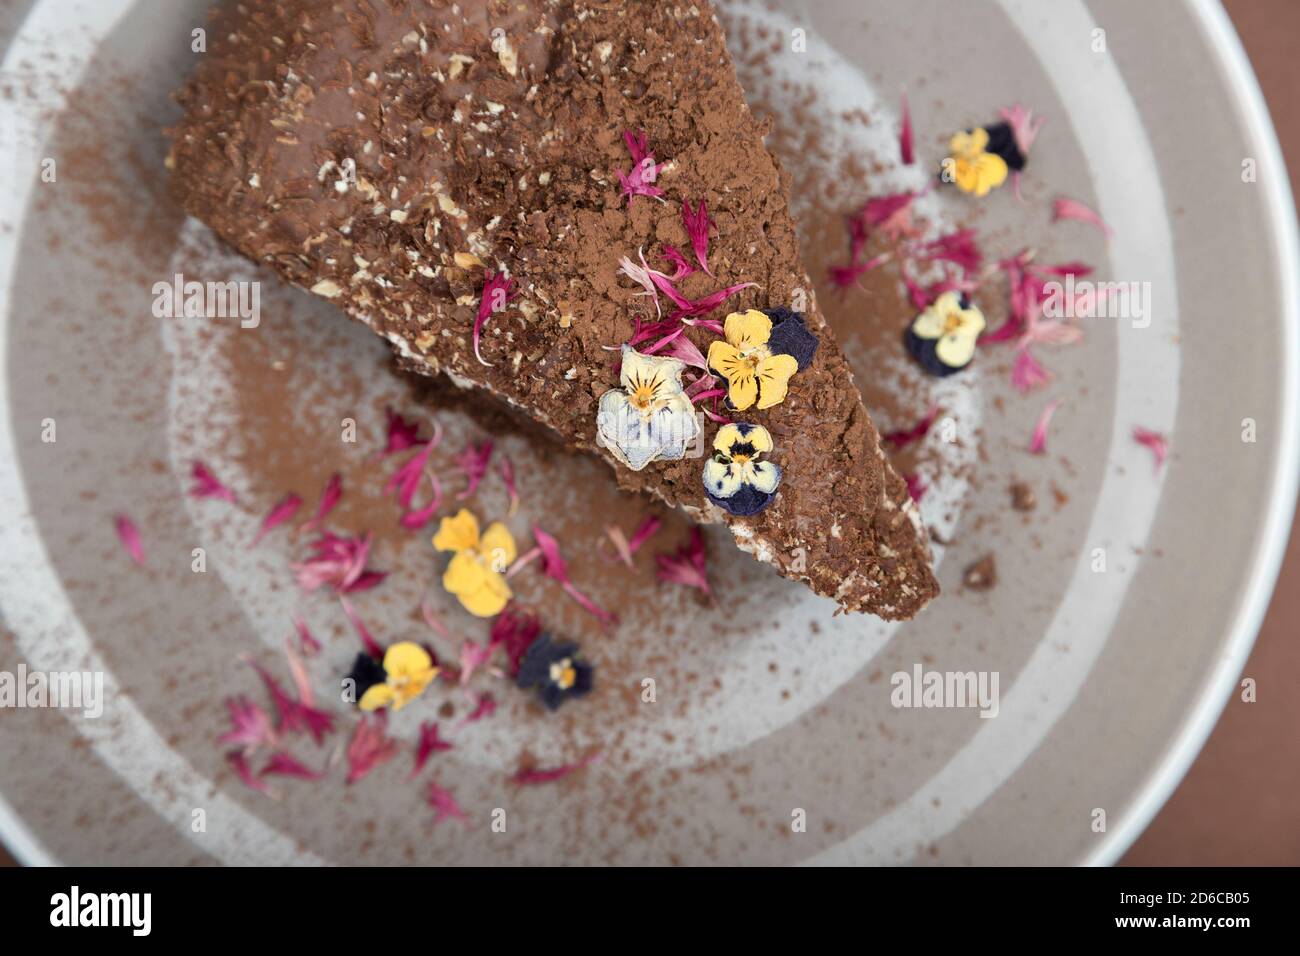 Vue de dessus d'un morceau de gâteau au chocolat avec des fleurs comestibles. Vue douce Banque D'Images